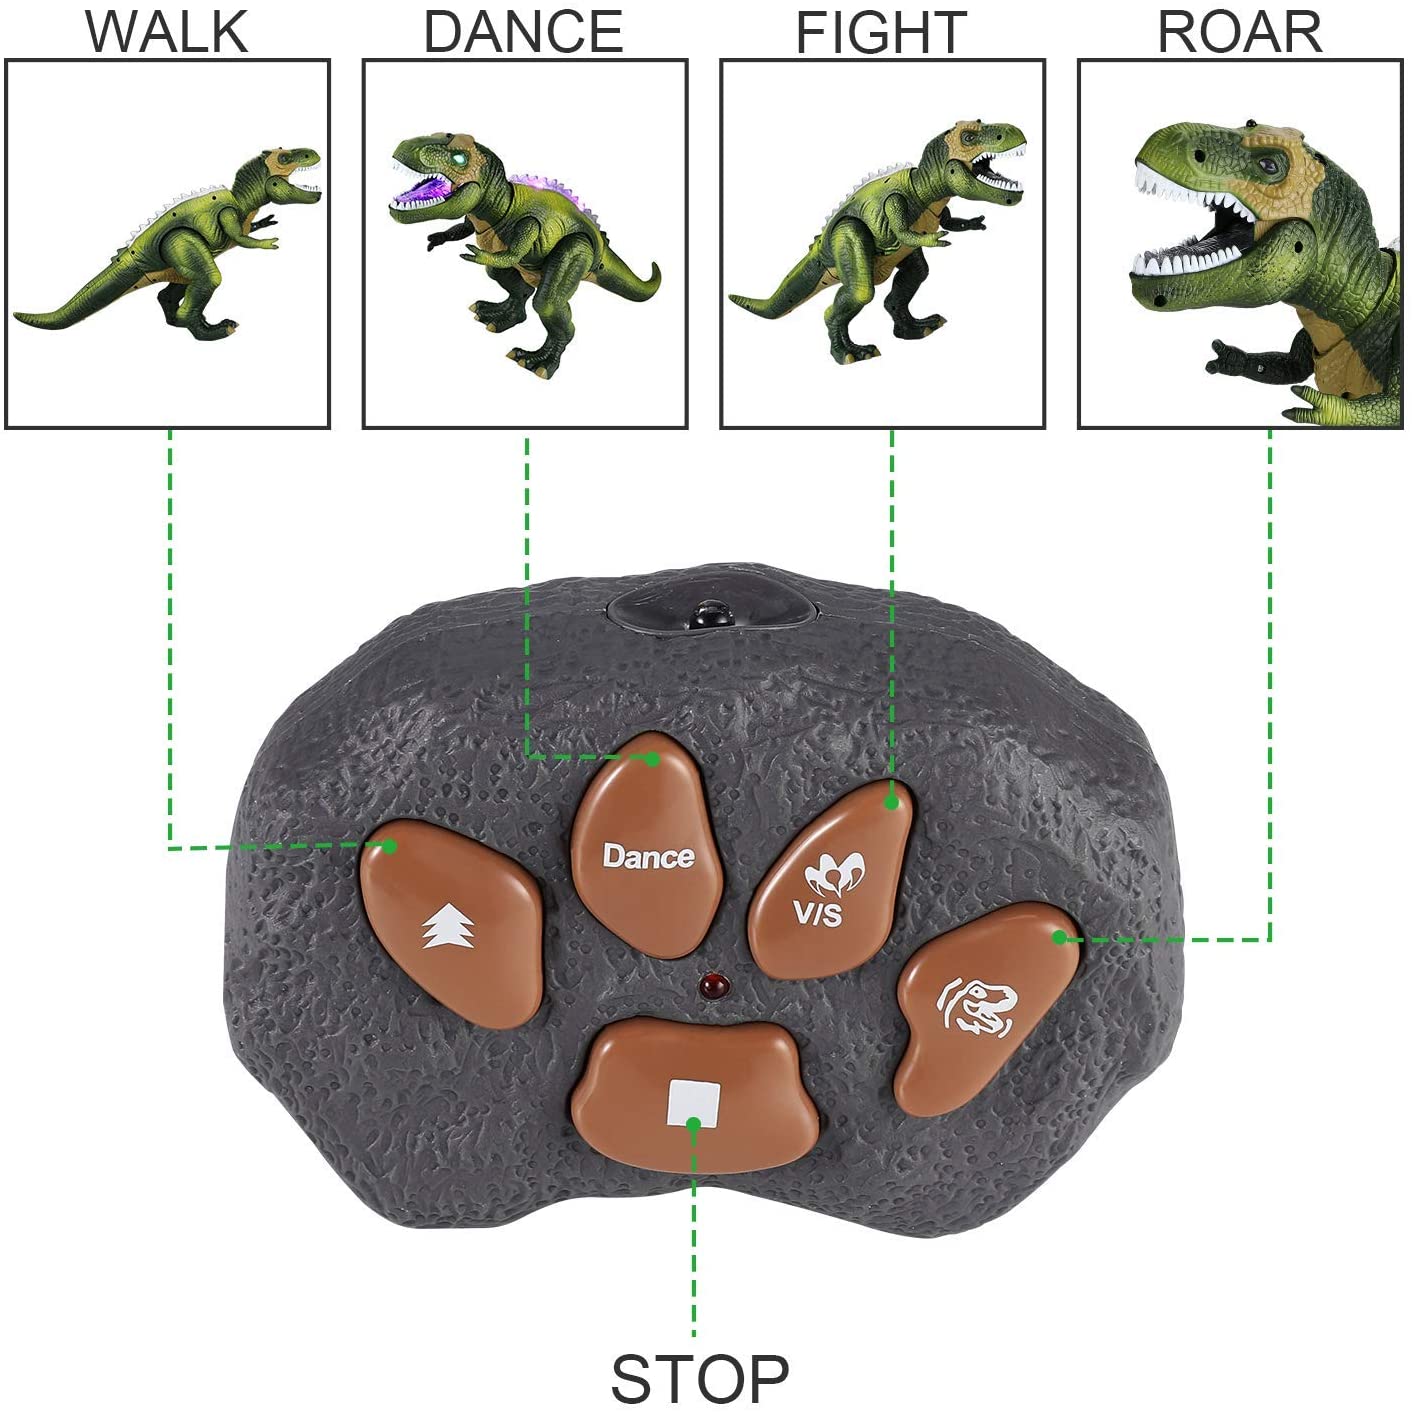 TOCO Toys TOCO - Dinosaur Remote Control